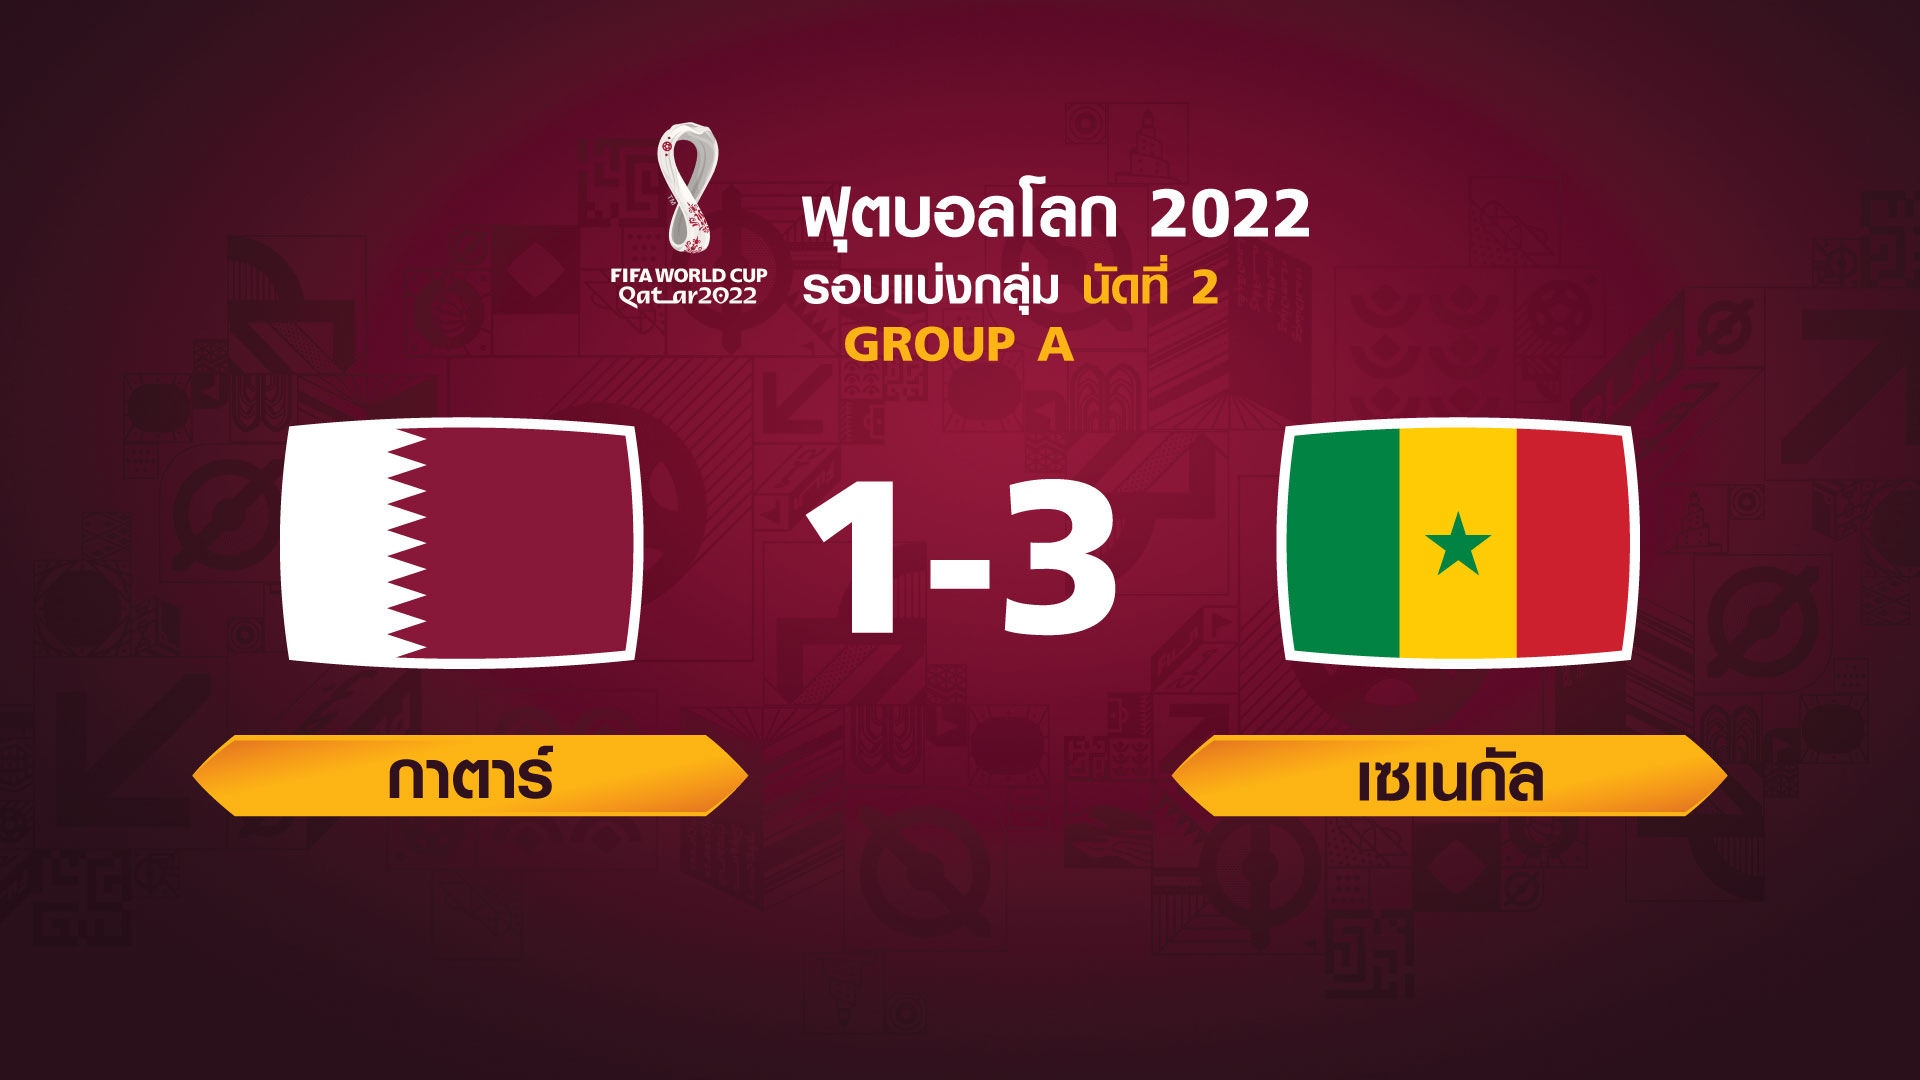 ฟุตบอลโลก 2022 รอบแบ่งกลุ่ม นัดที่ 2 ระหว่าง Qatar vs Senegal